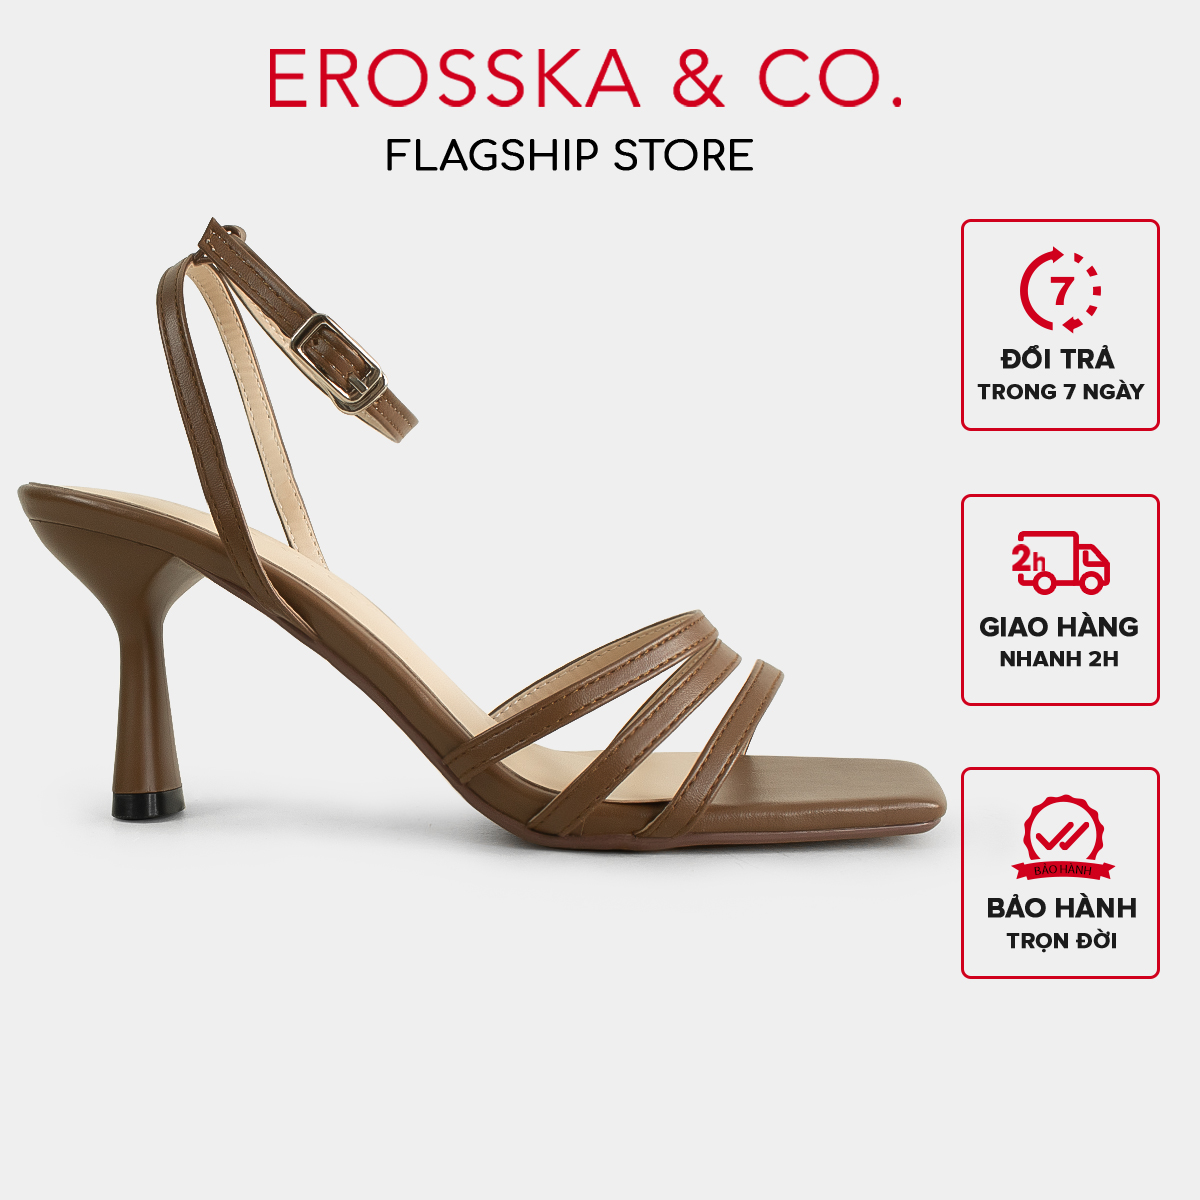 Erosska - Giày cao gót nhọn mũi hở phối dây quai mảnh cao 7cm màu nâu - EB052